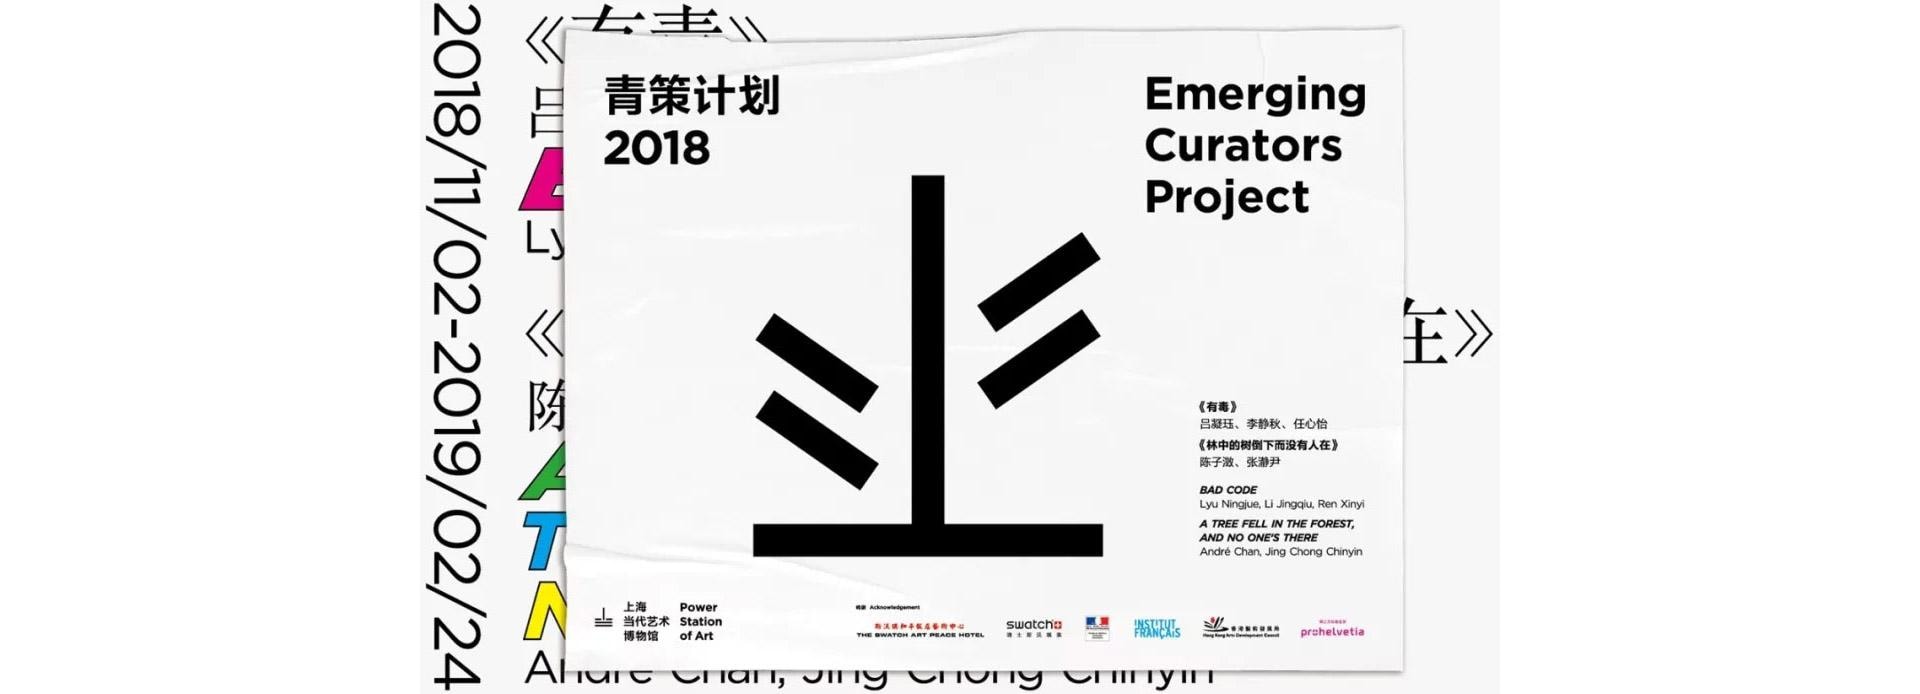 Emerging Curators Project 2018